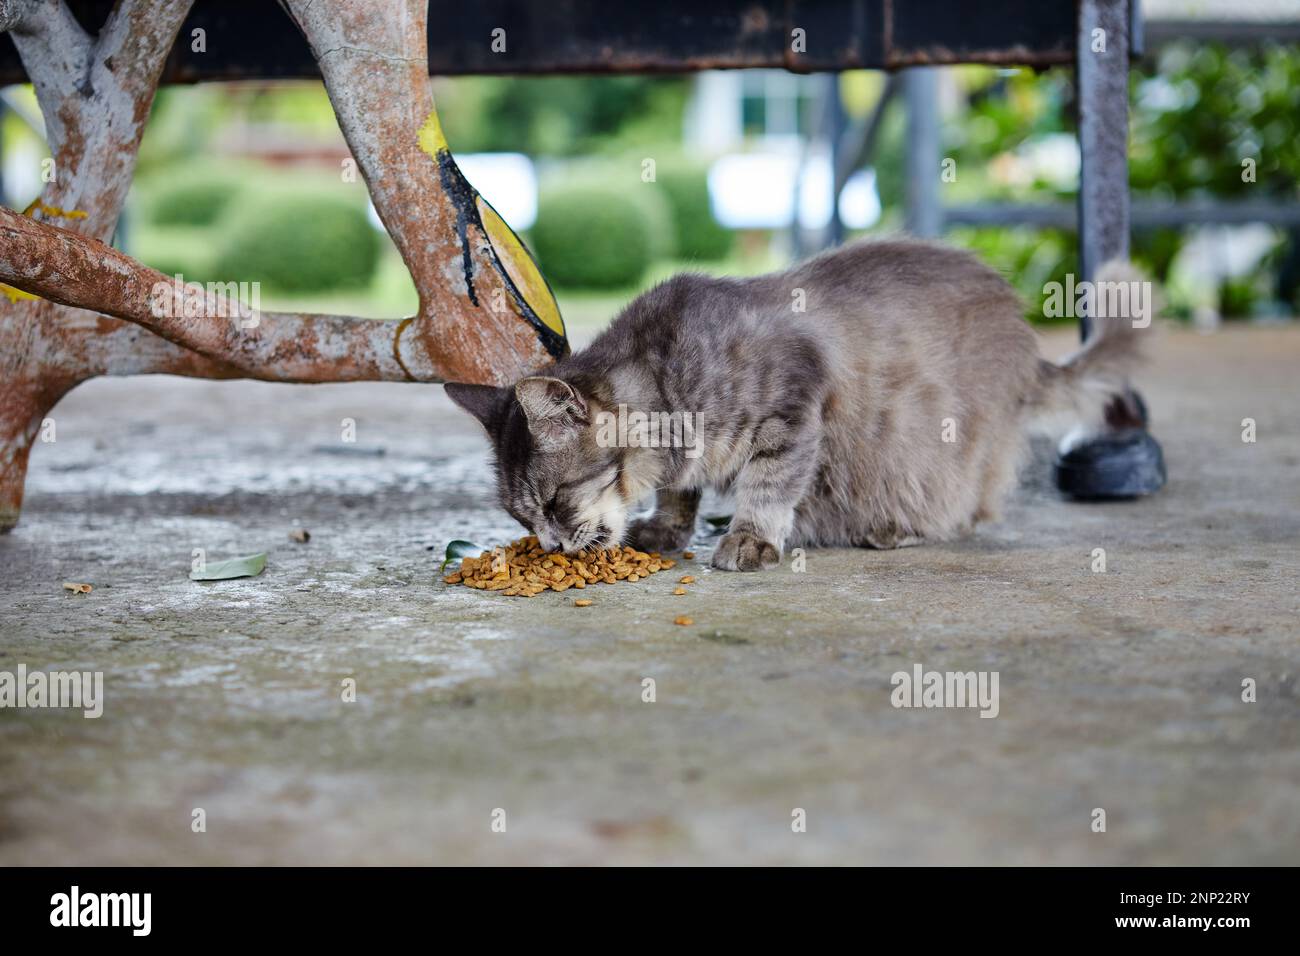 Gatto incinta che mangia sul pavimento di cemento Foto Stock